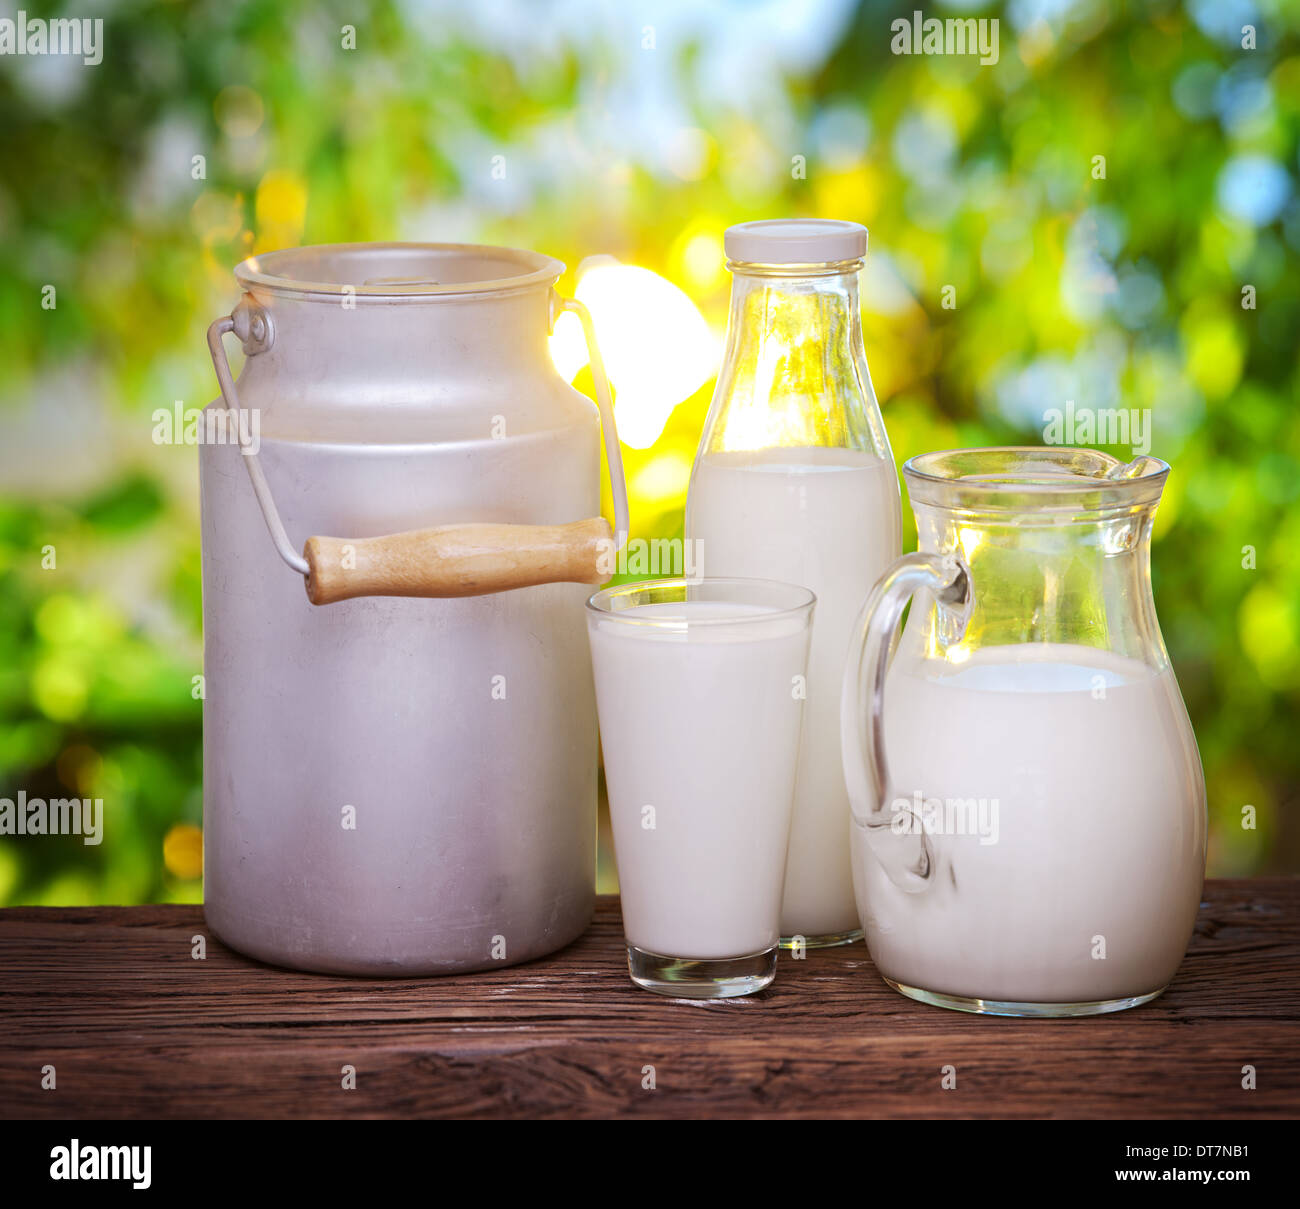 Milch in verschiedenen Gerichten auf dem alten Holztisch im Freien. Stockfoto